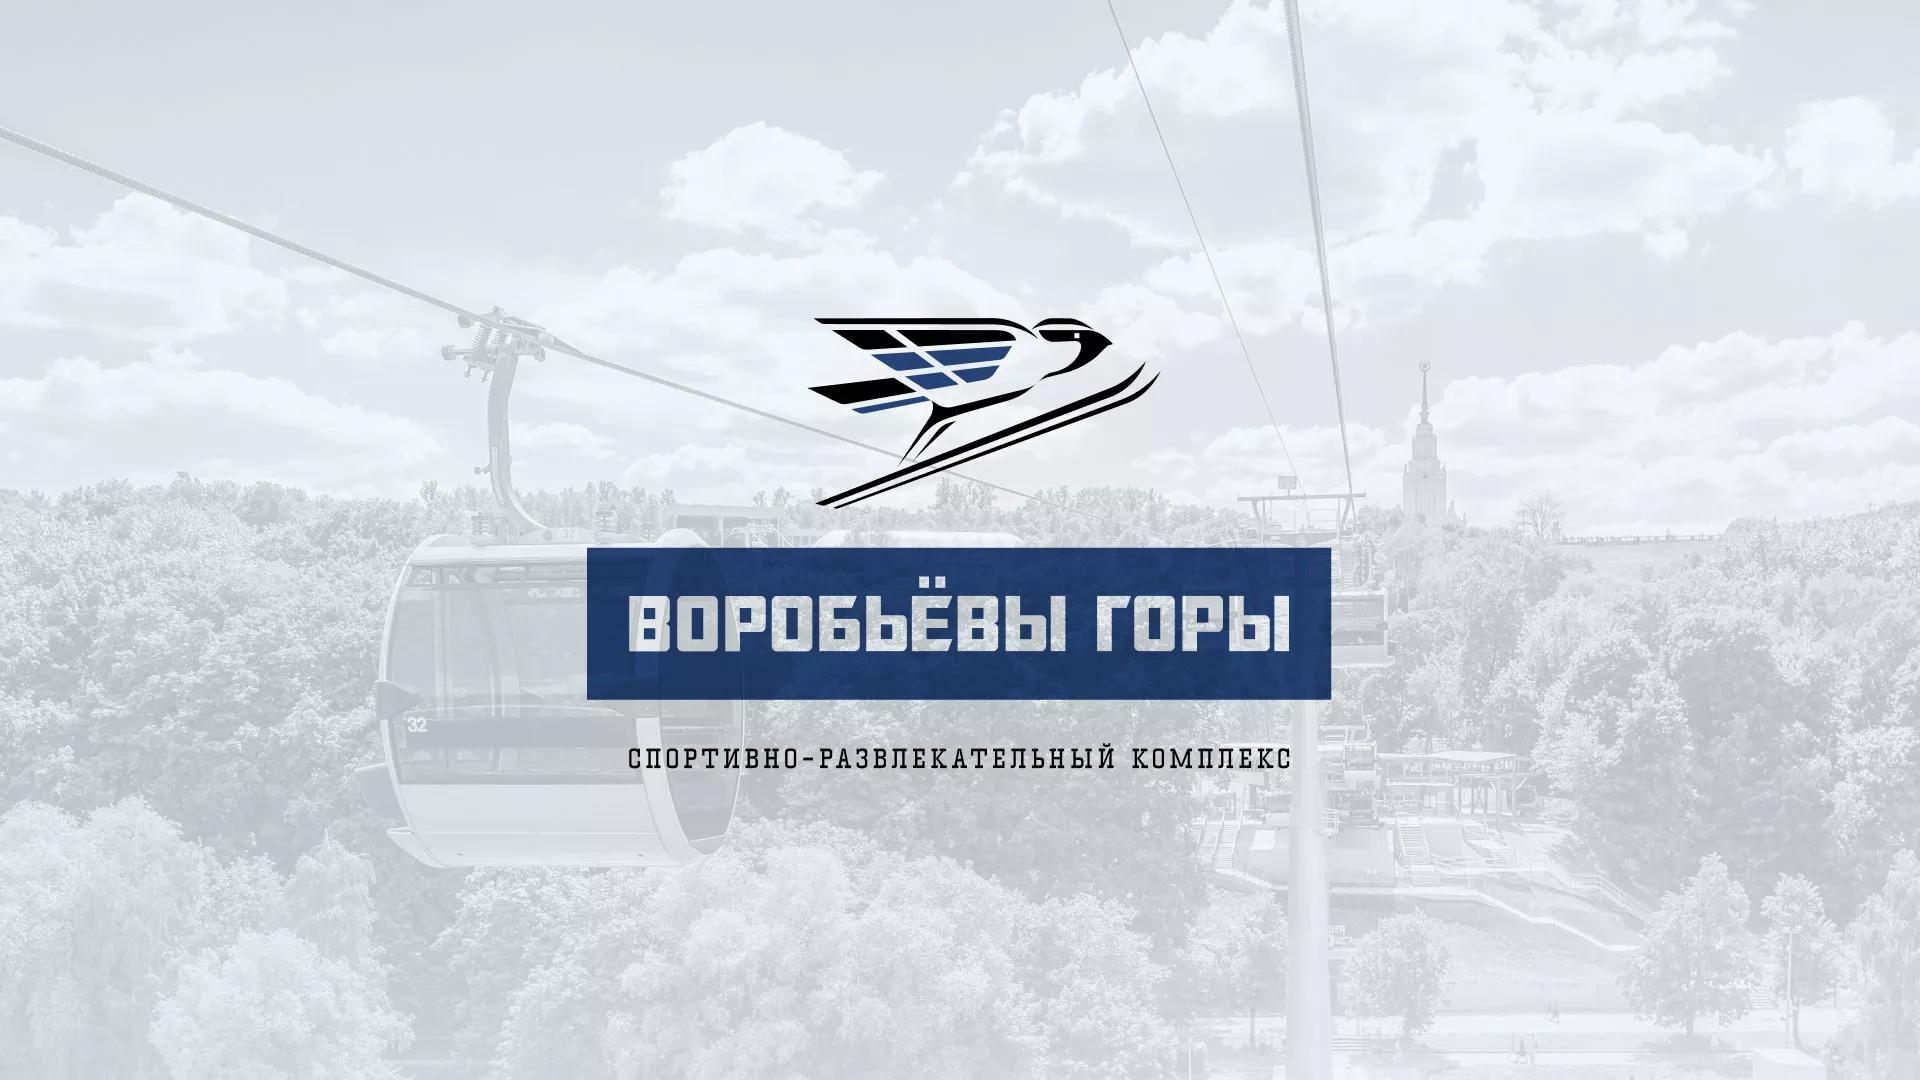 Разработка сайта в Кадникове для спортивно-развлекательного комплекса «Воробьёвы горы»